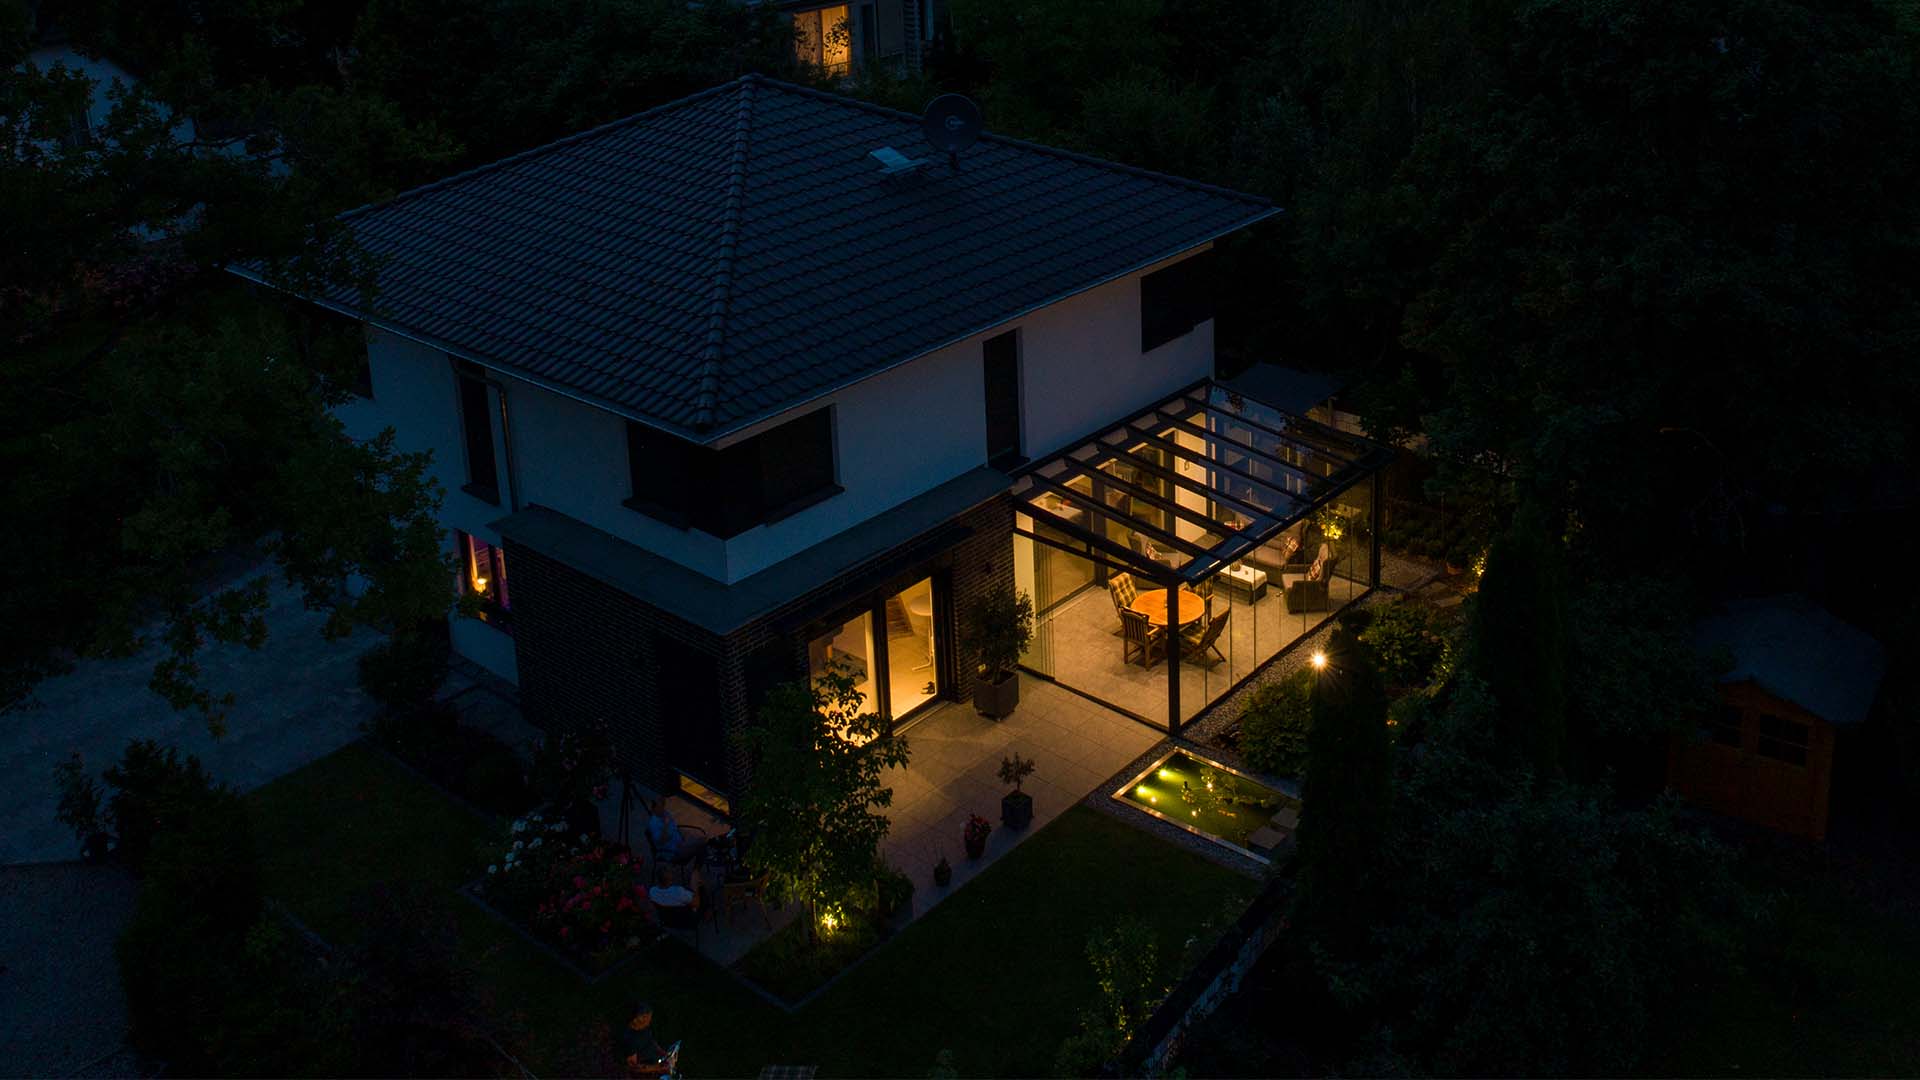 Nächtliche Atmosphäre, modernes Wohnhaus mit beleuchtetem Sommergarten